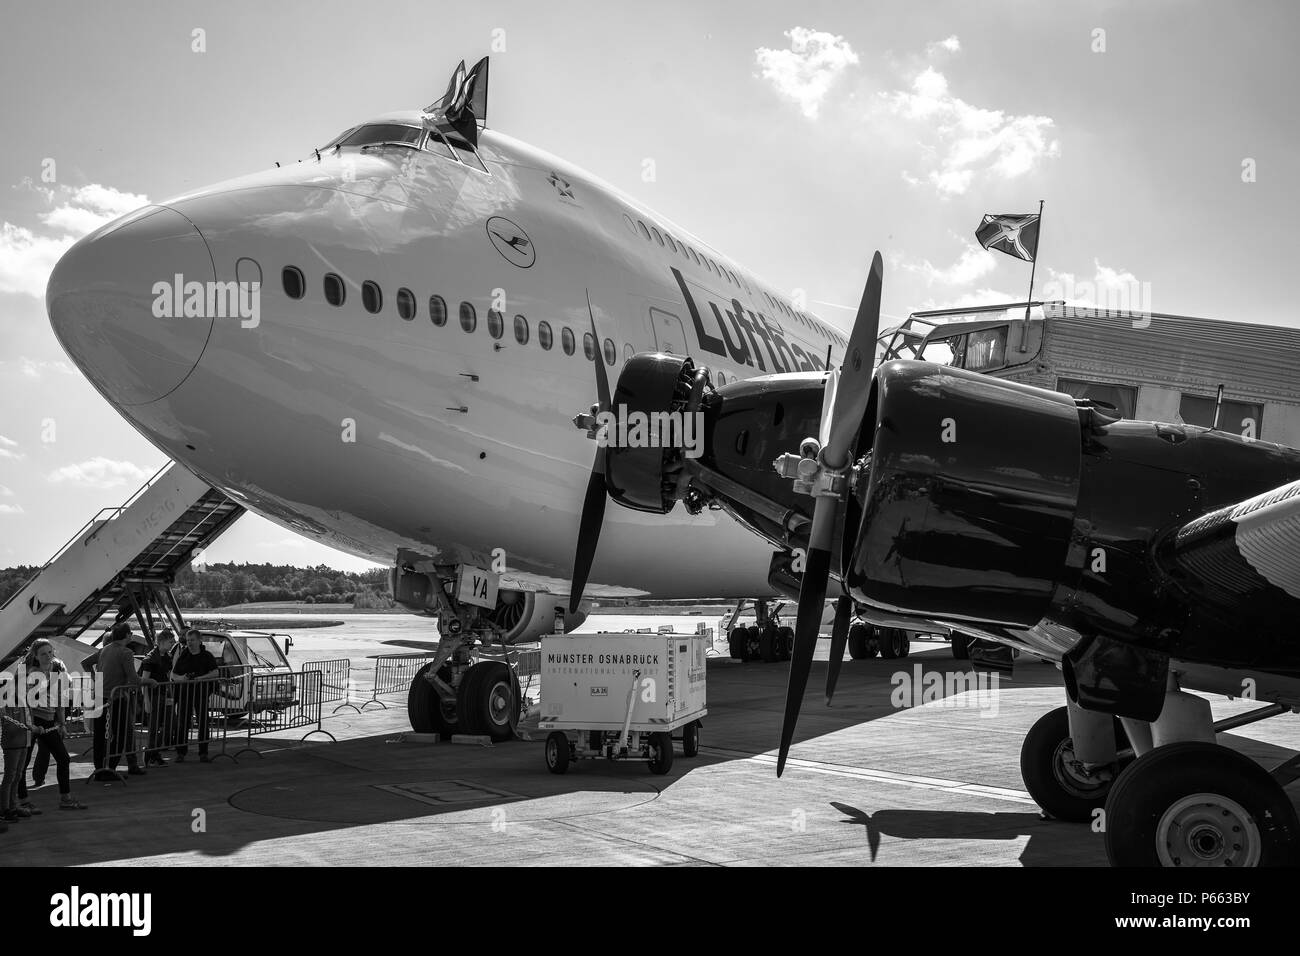 Avions de Transport Junkers Ju 52/3m (premier plan) et l'avion de ligne gros-porteurs Boeing 747-8 (arrière-plan). Banque D'Images